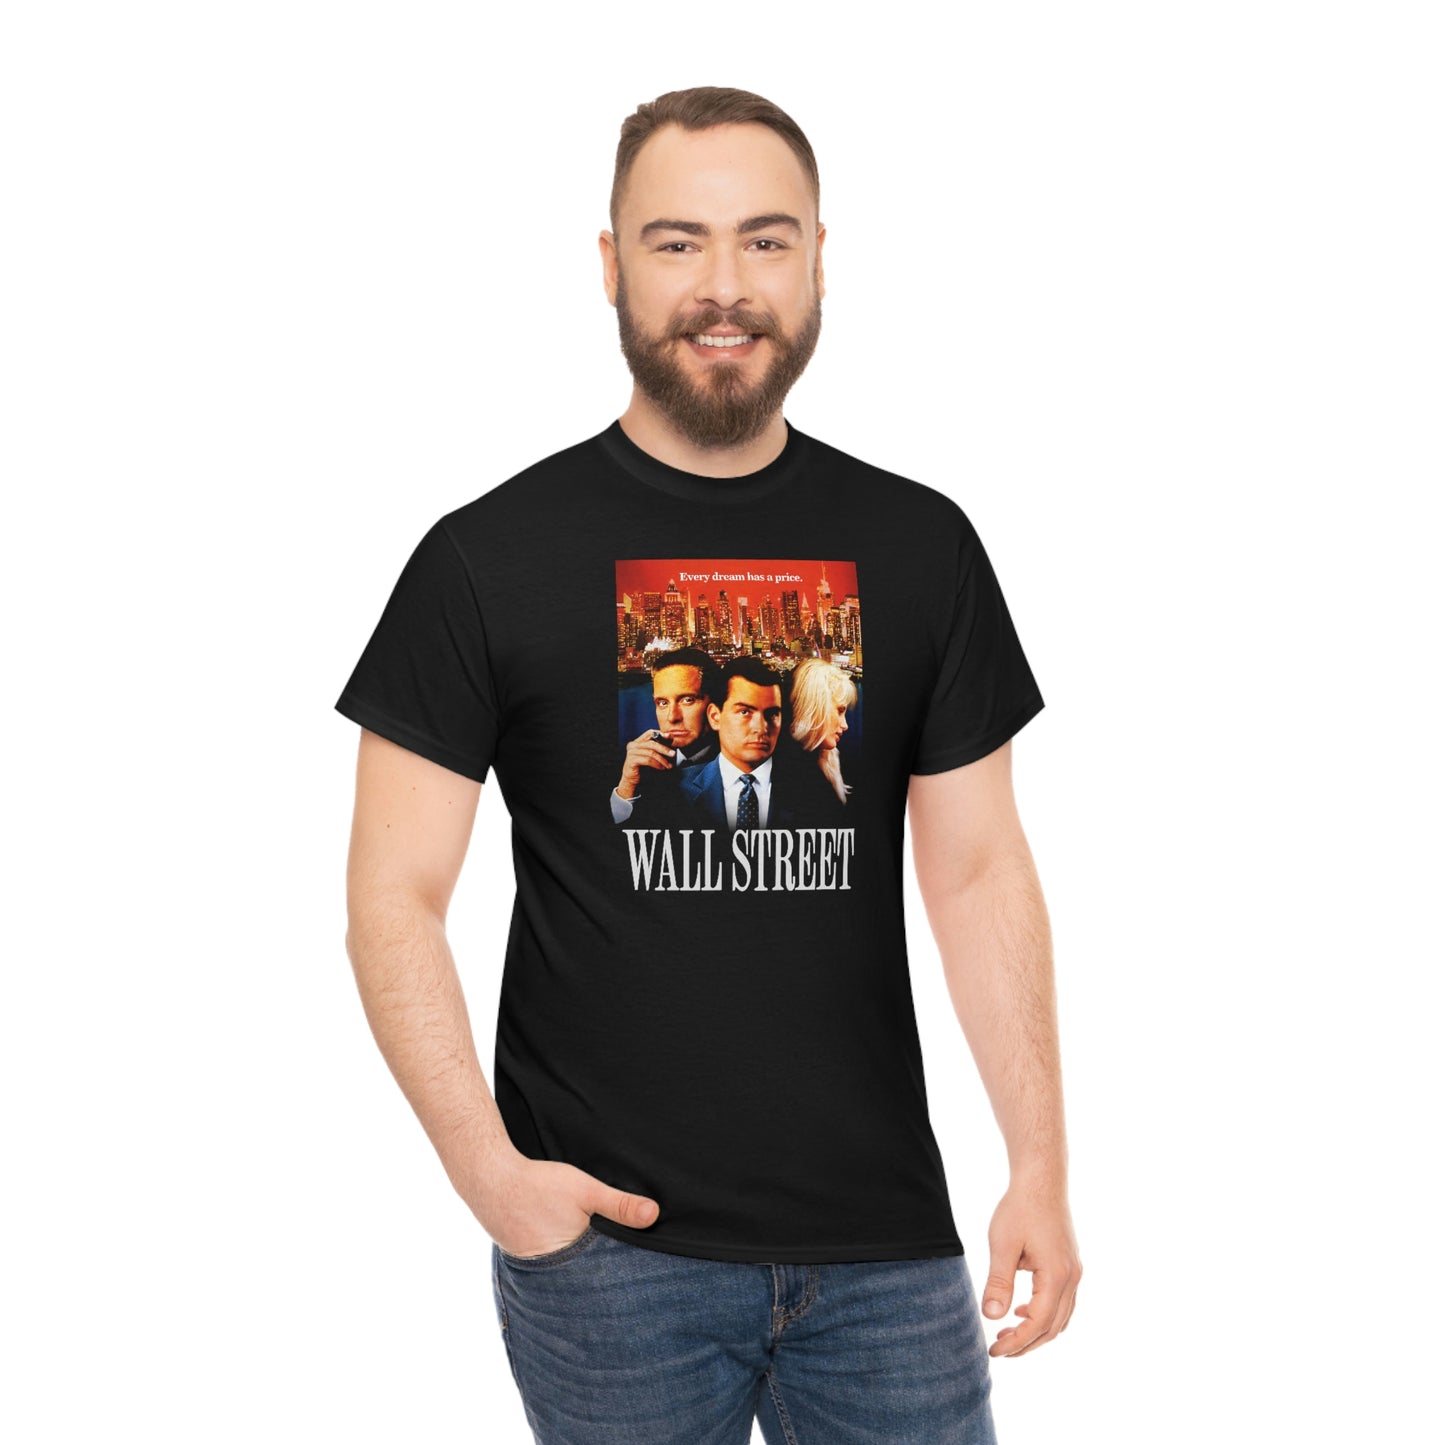 Wall Street T-Shirt